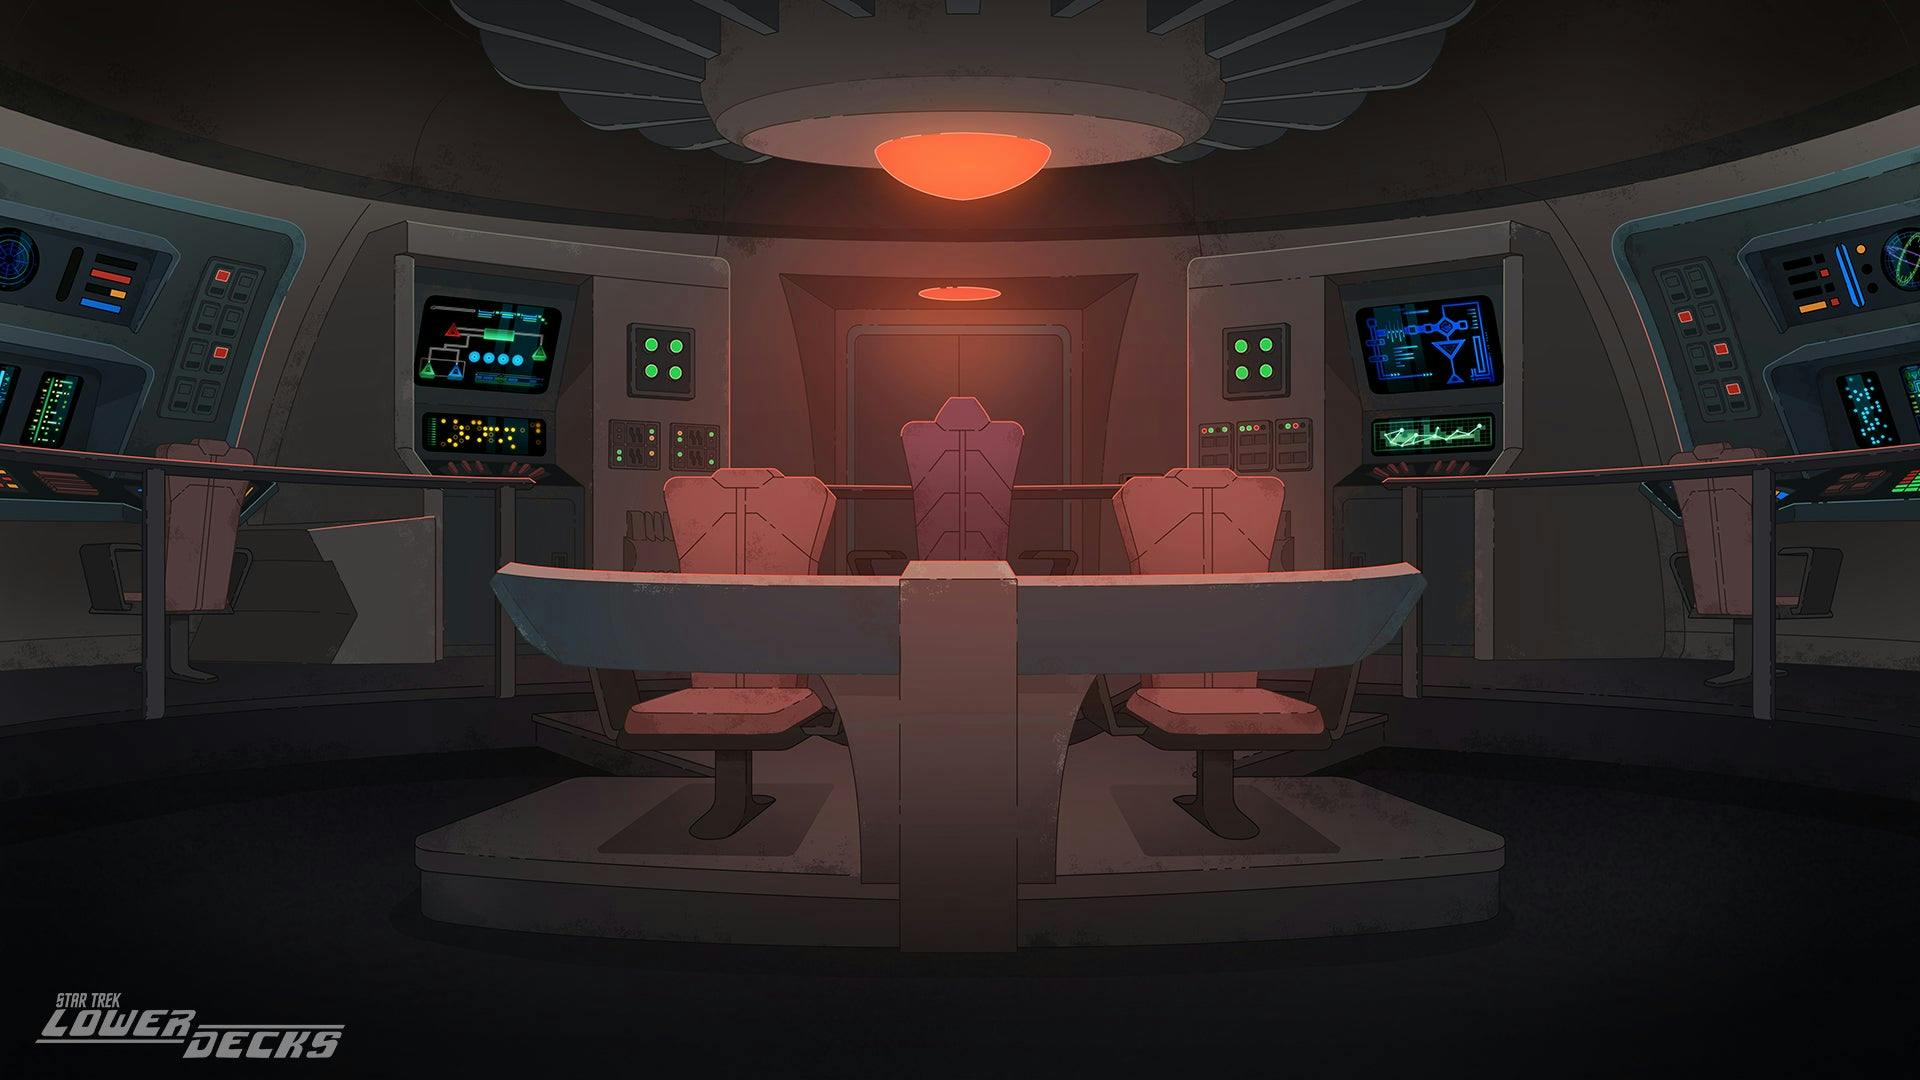 Scenes from Star Trek: Lower Decks, Season Two